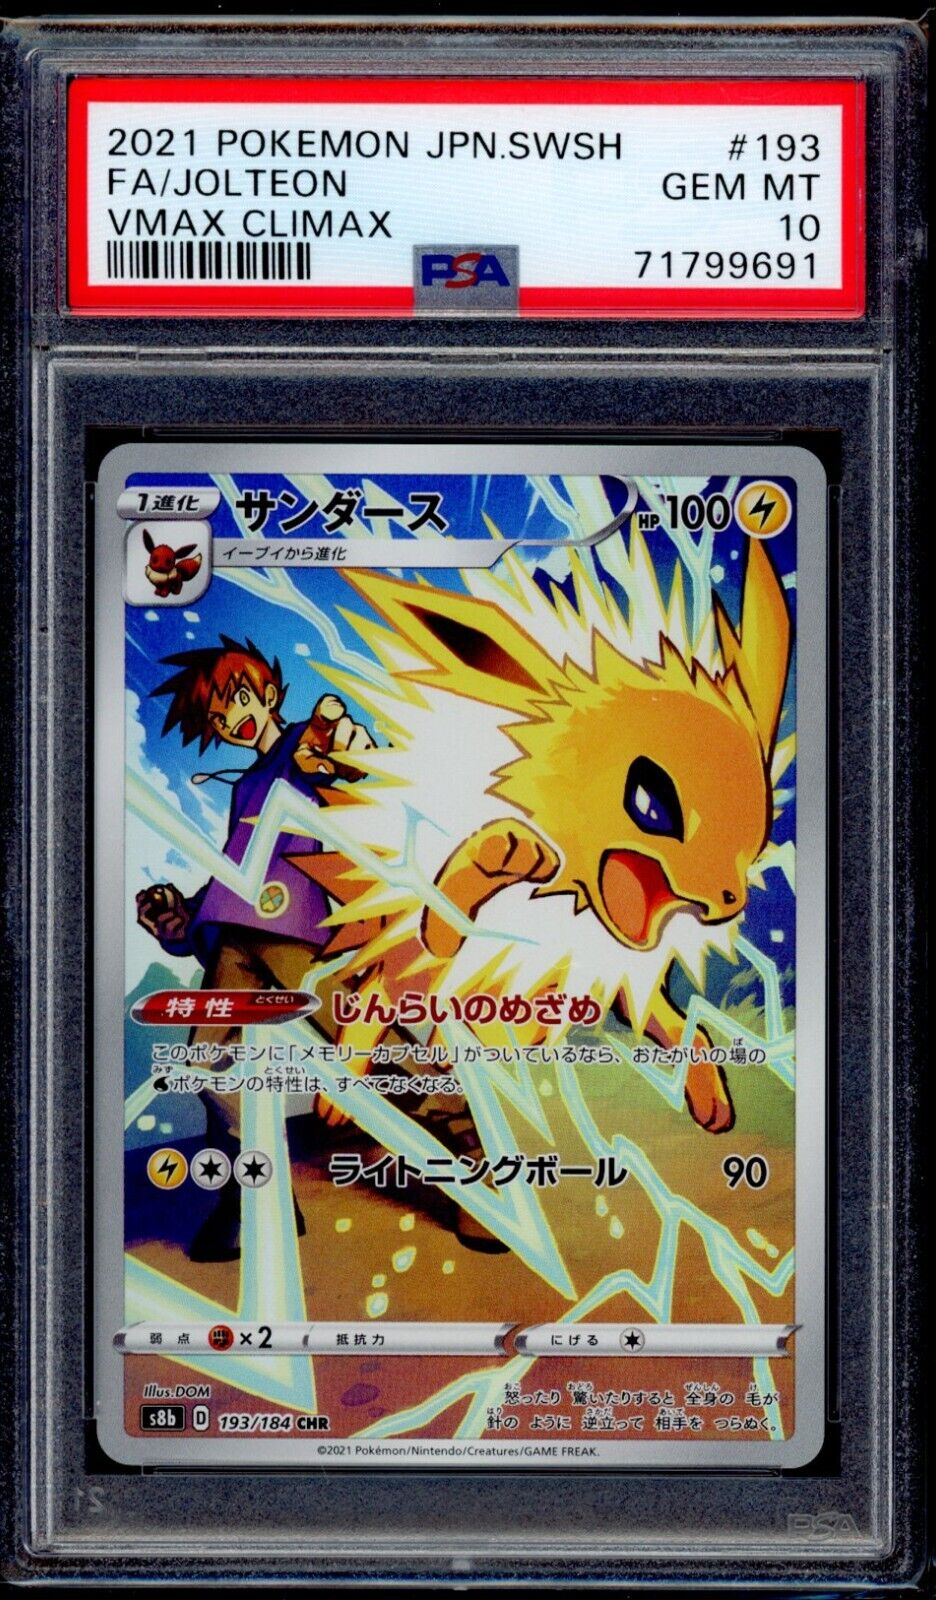 PSA 10 Jolteon 2021 Pokemon Card 193/184 Vmax Climax